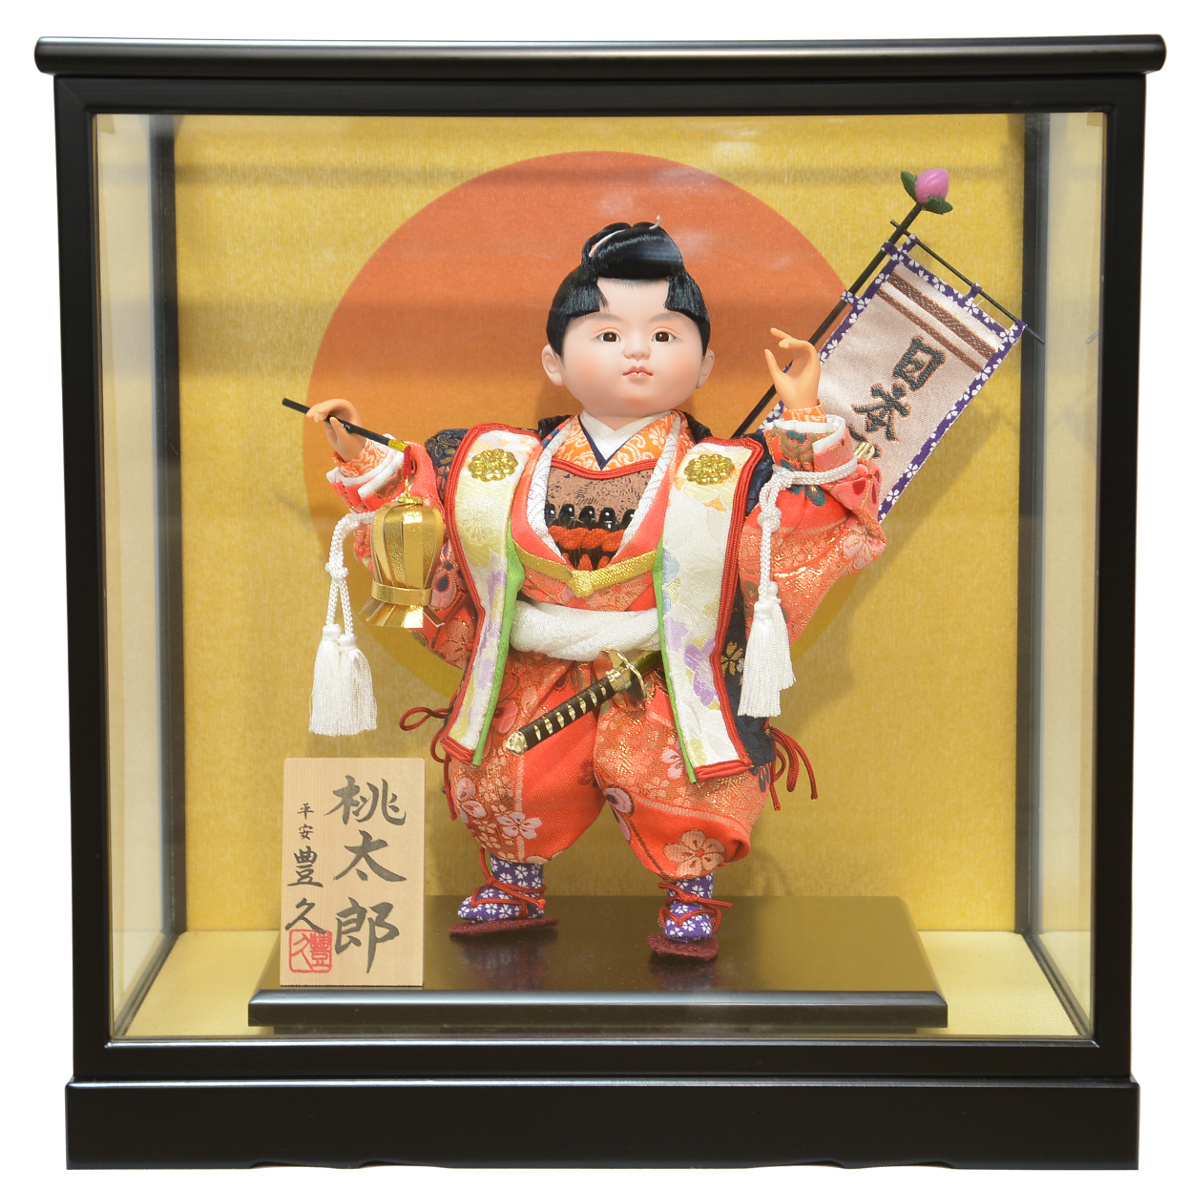 五月人形 お祝いケース飾り 子供大将 6号 桃太郎 間口36cm 5月人形 